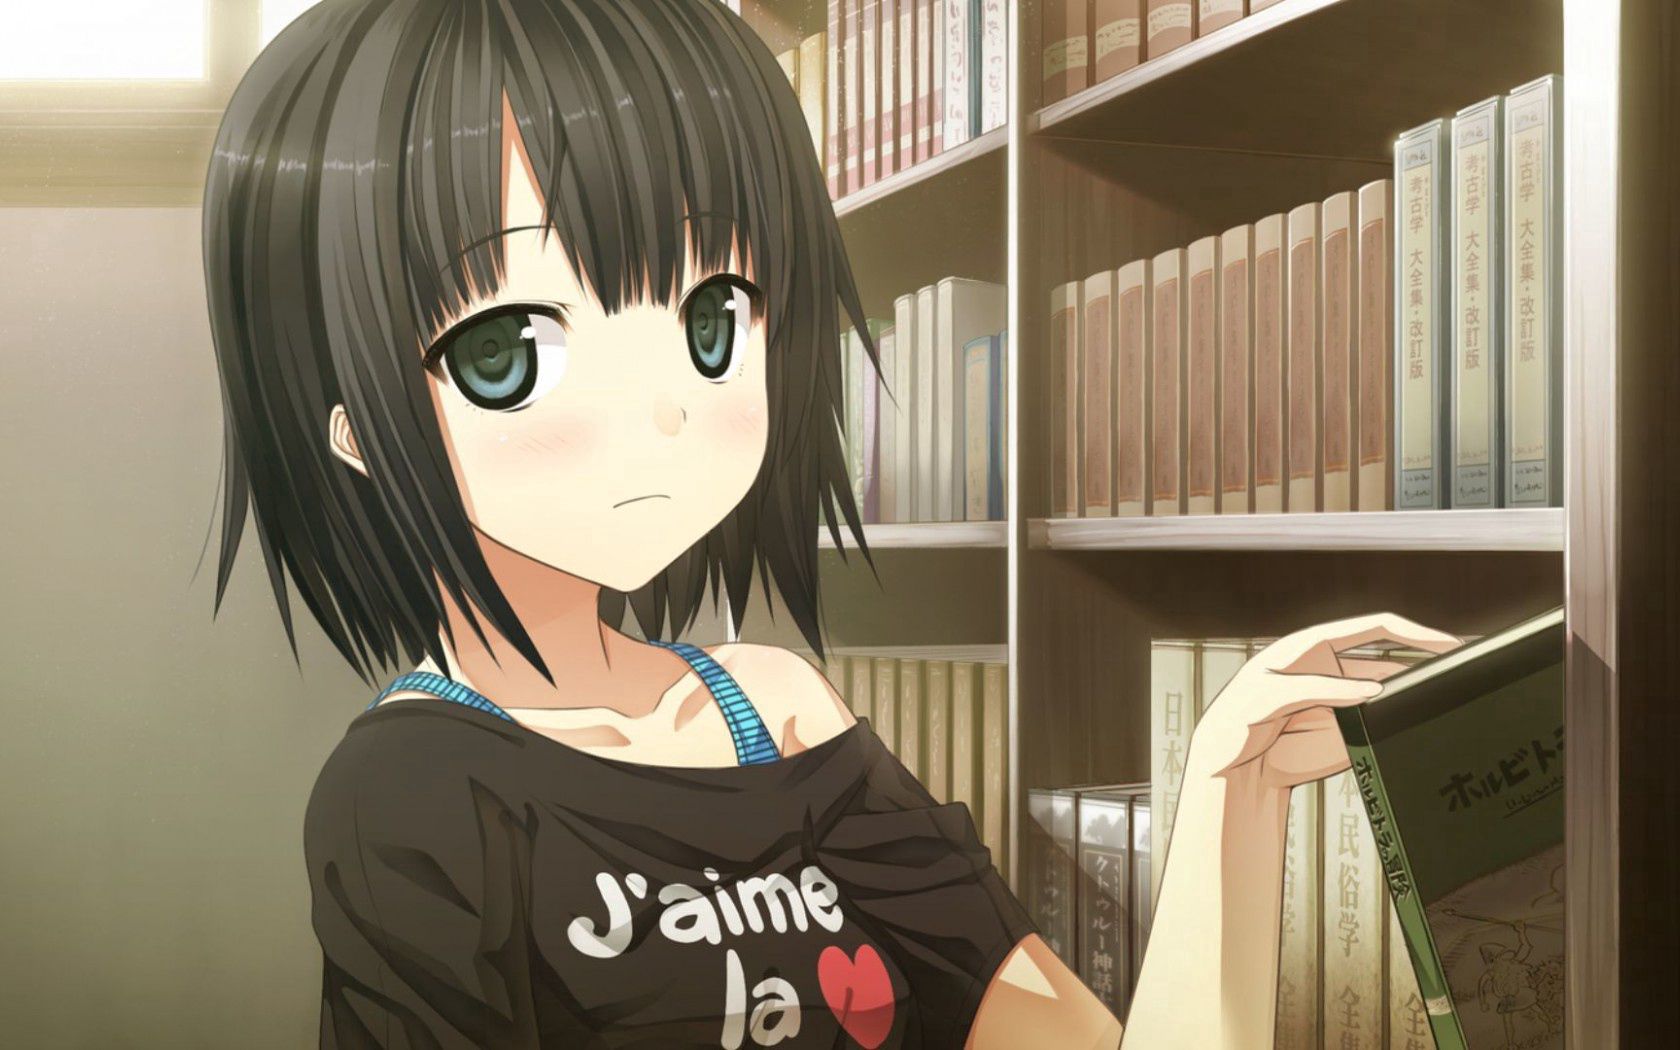 girl, anime, books, library